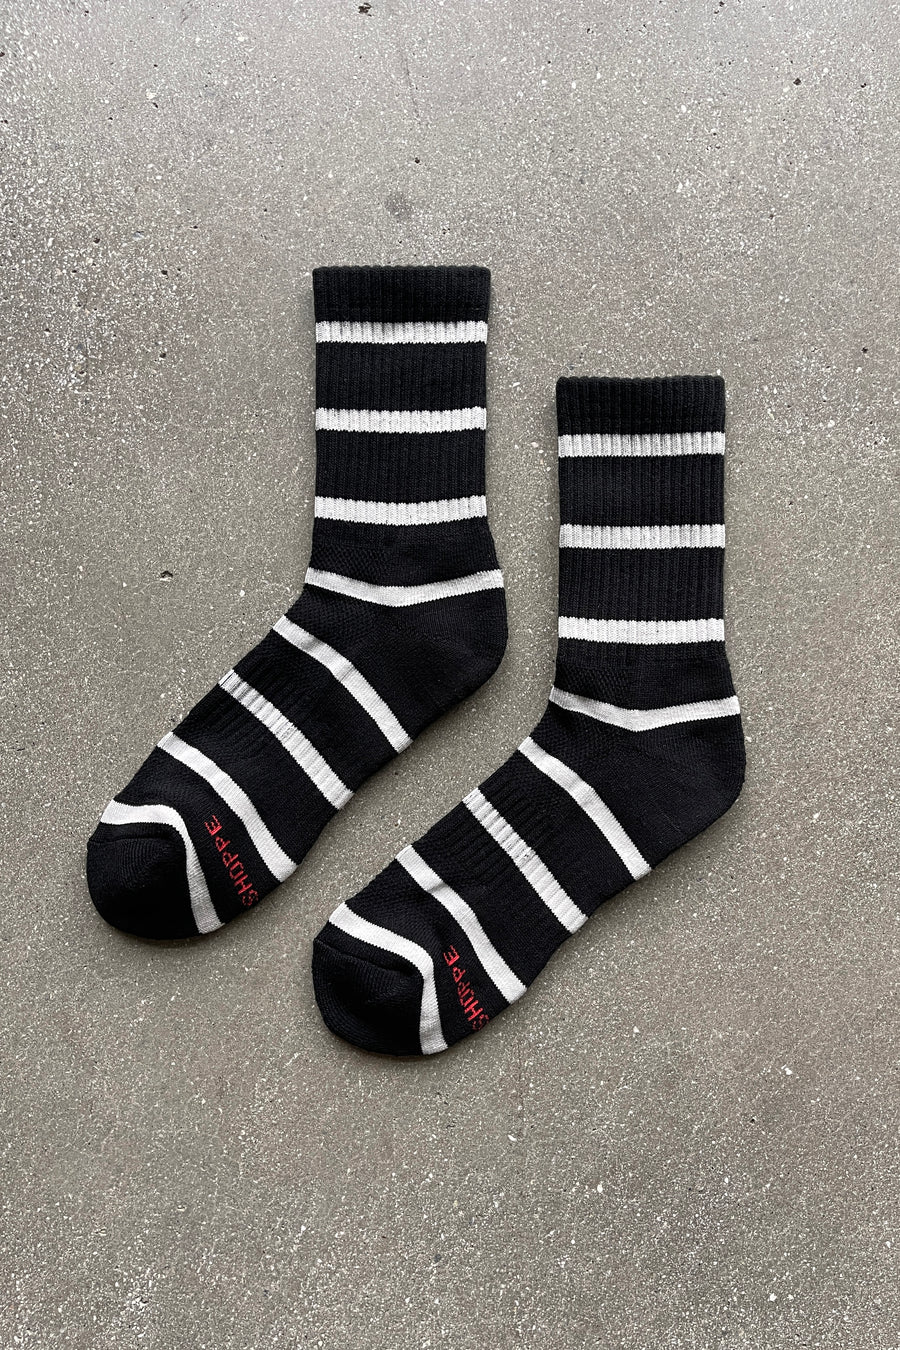 Boyfriend Socks in Black Stripe